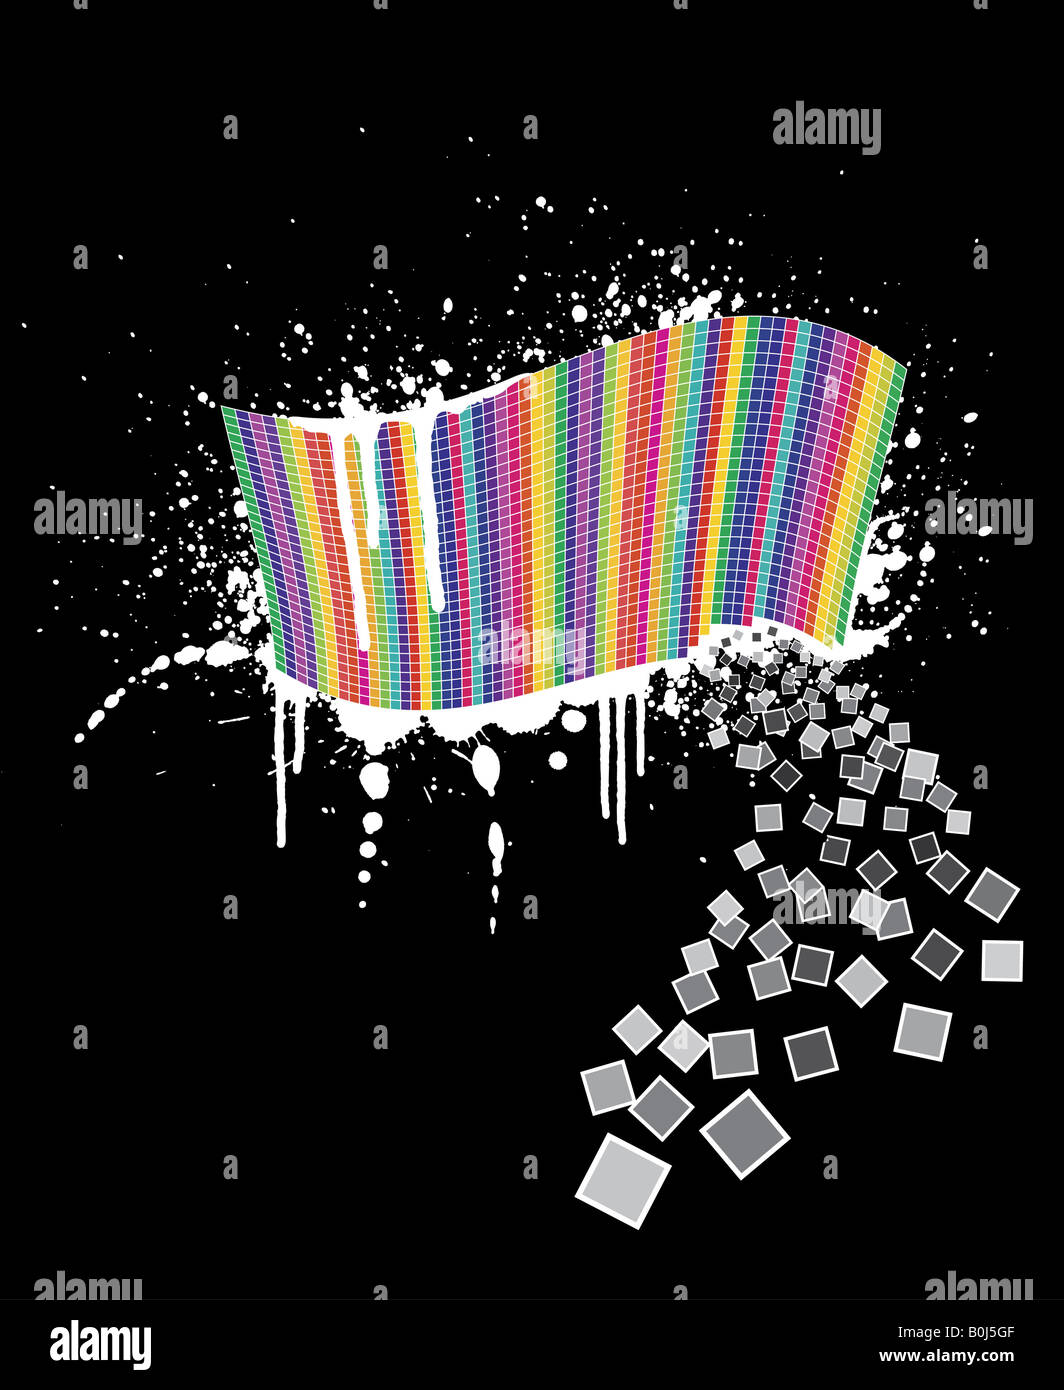 Vektor-Illustration einer wellenförmigen Regenbogen Wand voller Quadrate mit schwarzer Tinte Splatter unterhalb es und weißer Farbe drüber Stockfoto